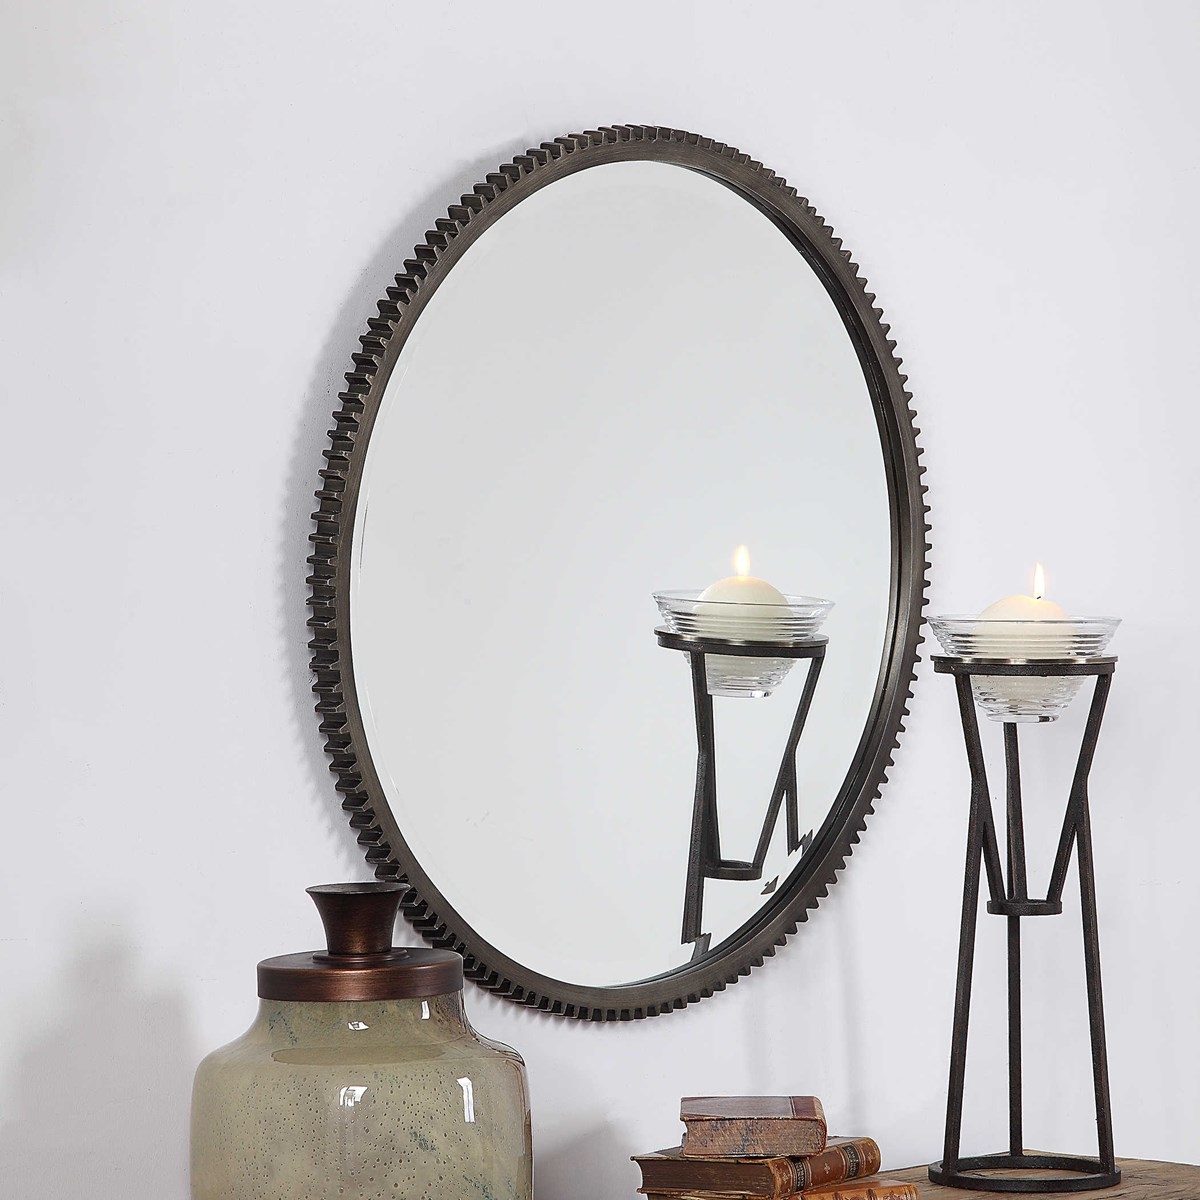 Werner Round Mirror, Aged Bronze, 30" - Image 2